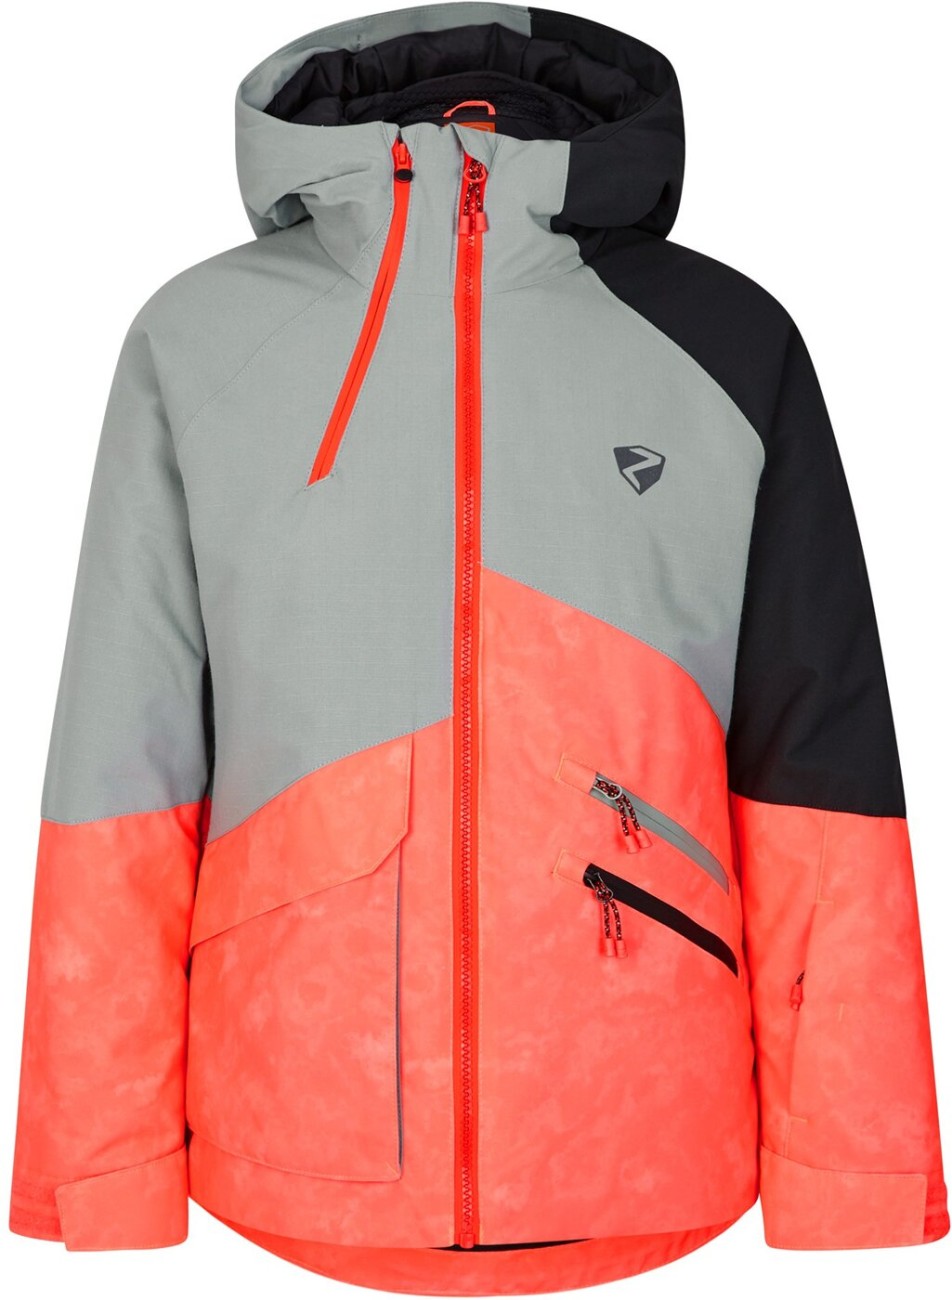 ZIENER ARUMA jun (jacket ski) tie dye hot red online kaufen